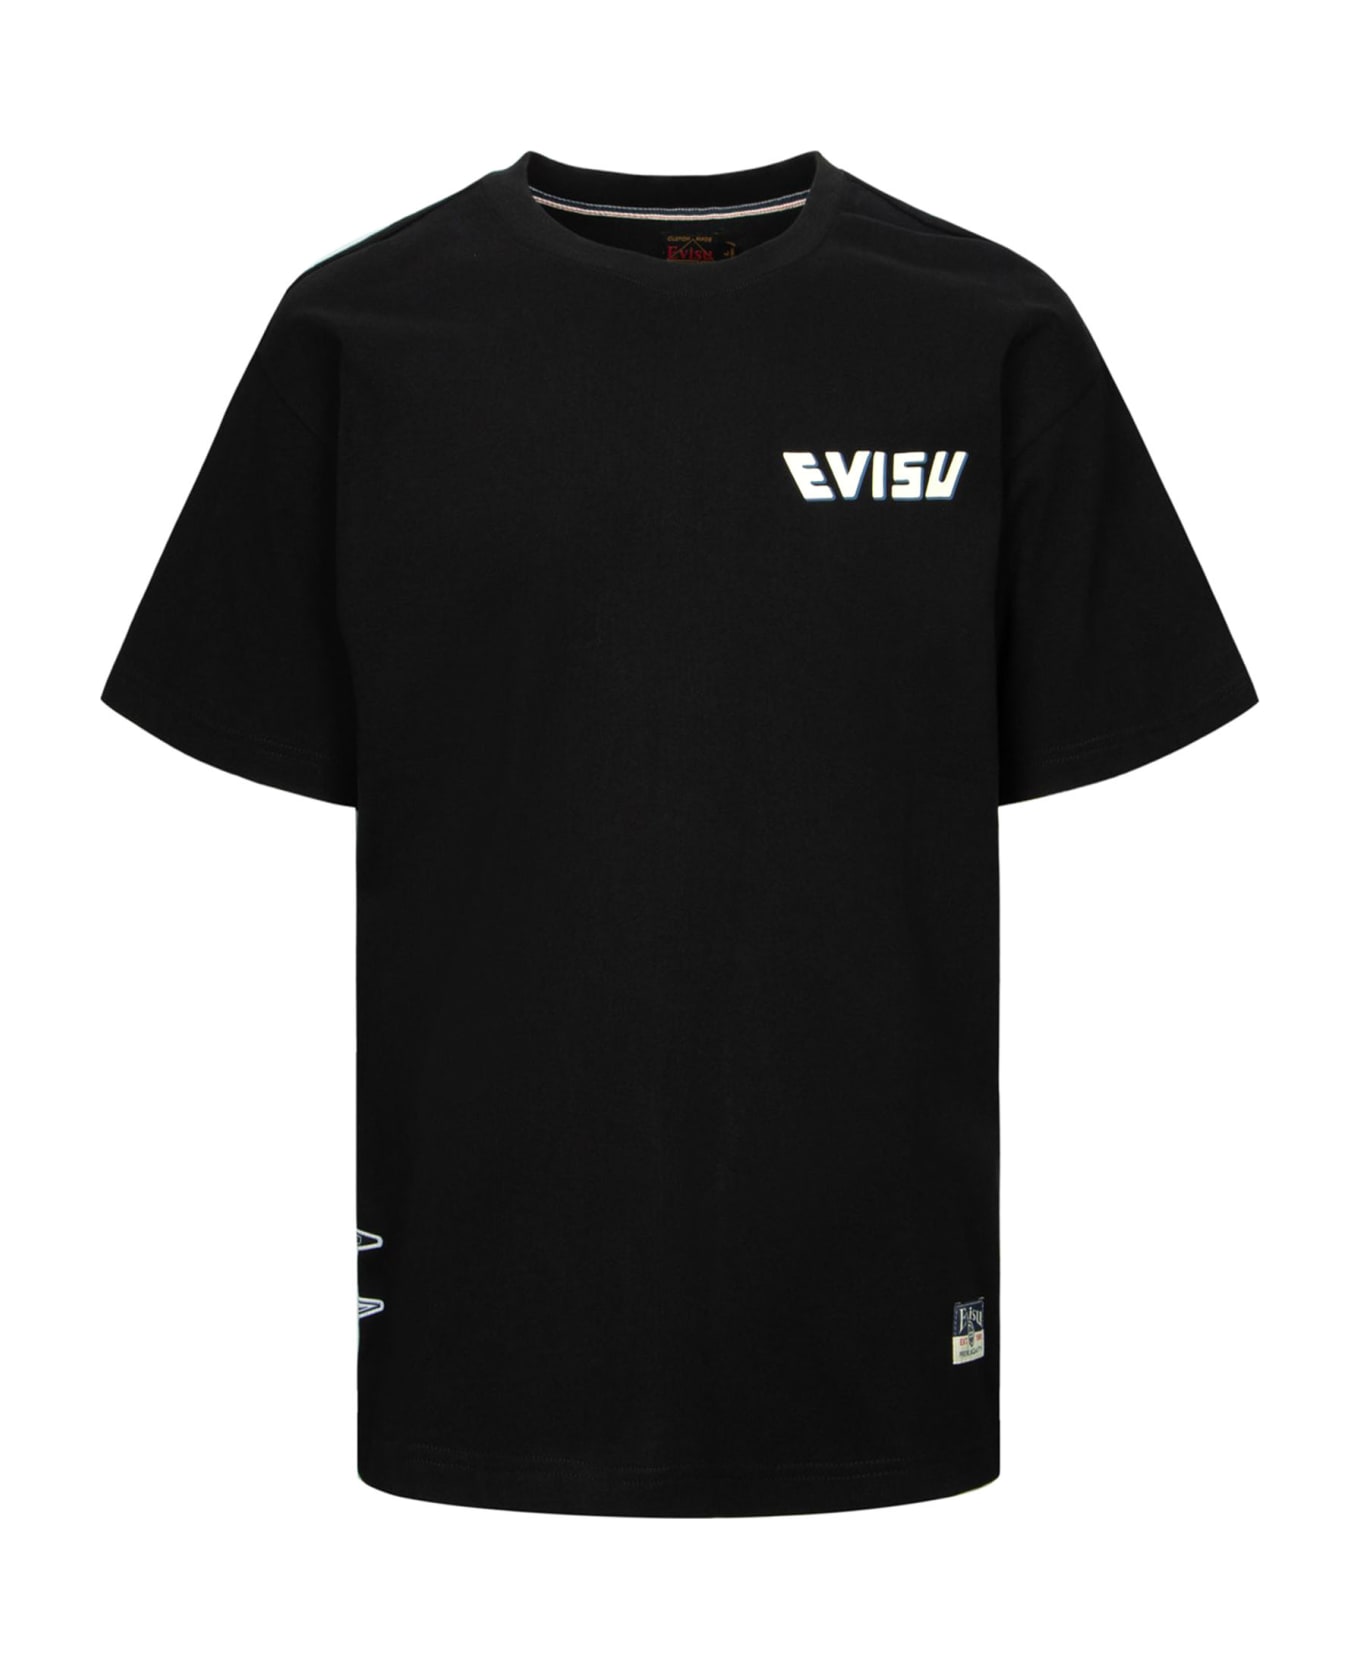 Evisu T-shirts And Polos Black - Black シャツ